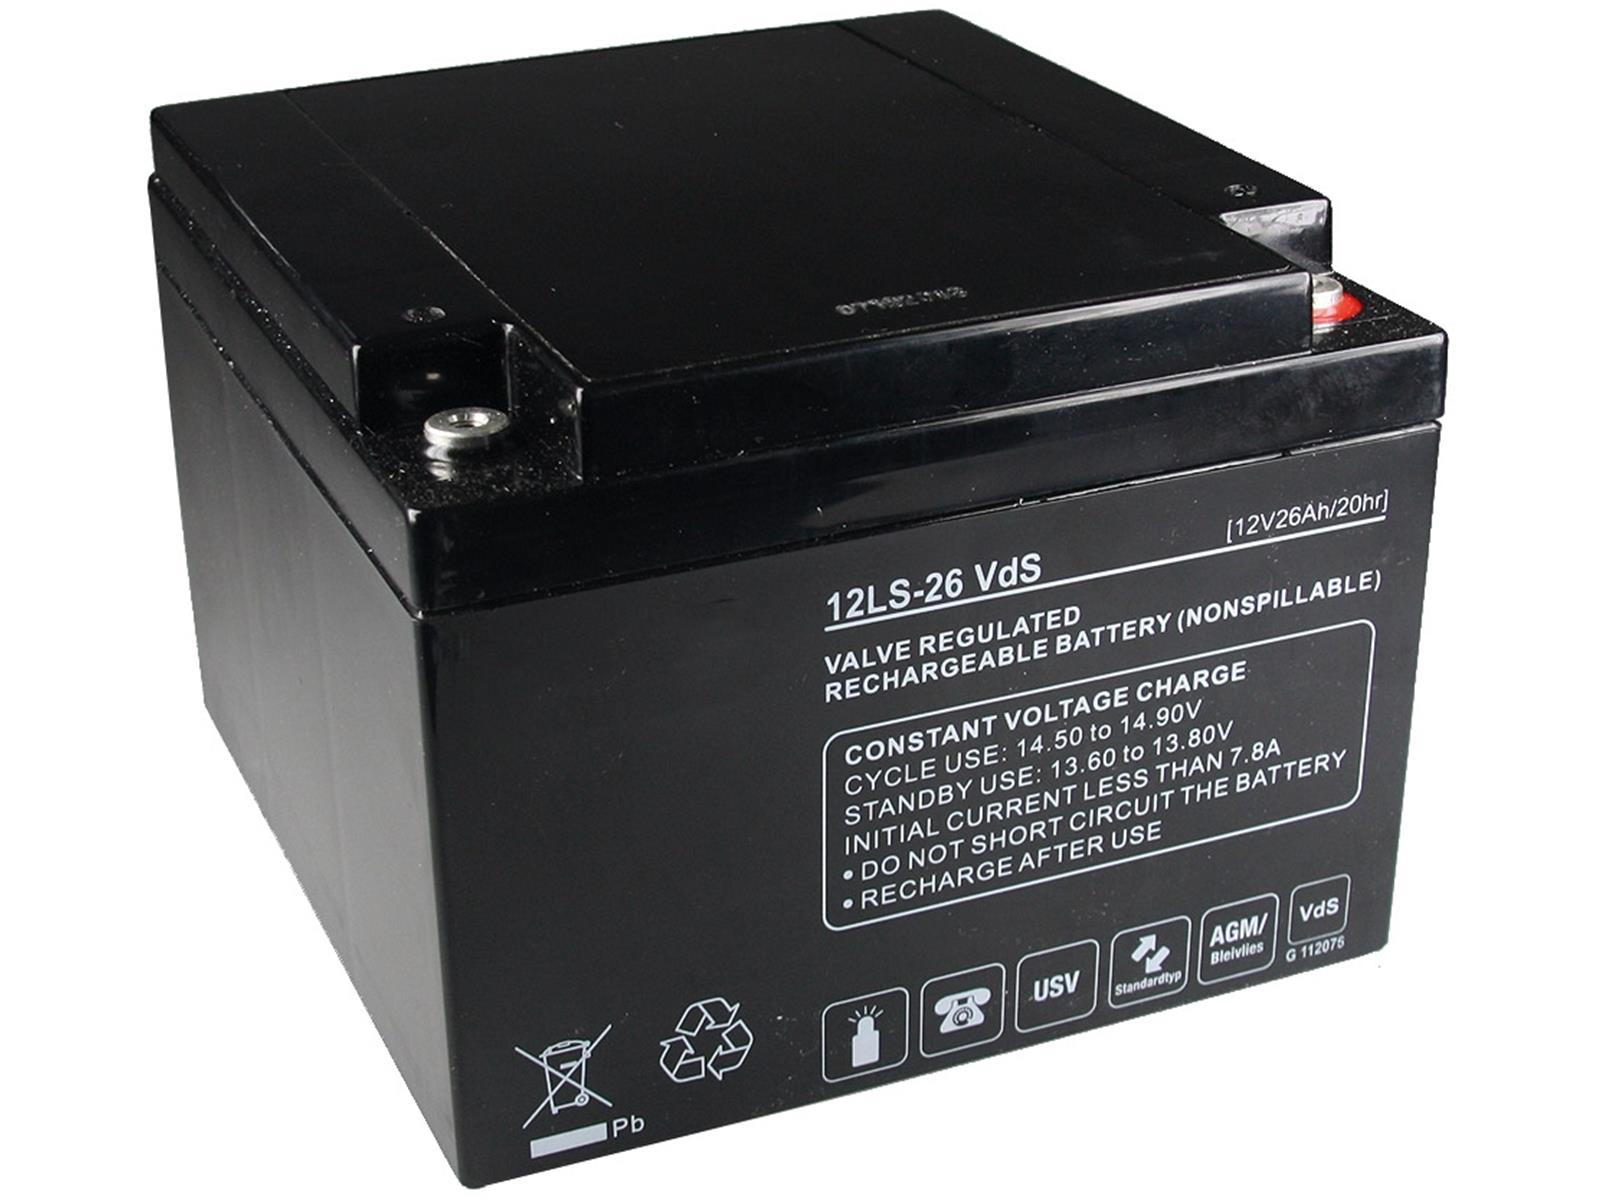 Bleiakku Q-Batteries 12V/26AhVdS-Zulassung, LxBxH 166x176x125mm, 8kg